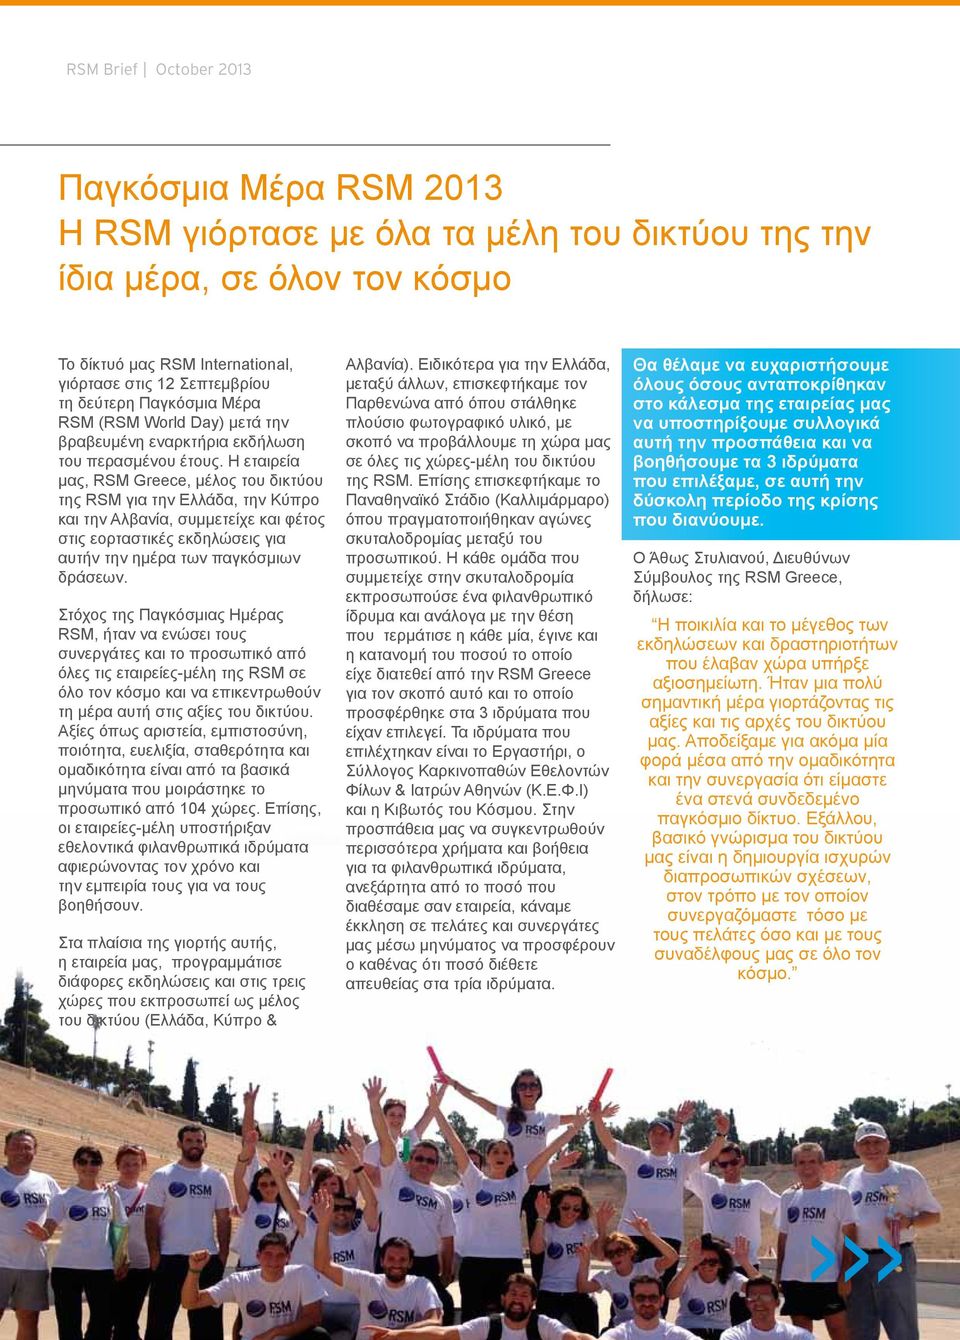 Η εταιρεία μας, RSM Greece, μέλος του δικτύου της RSM για την Ελλάδα, την Κύπρο και την Αλβανία, συμμετείχε και φέτος στις εορταστικές εκδηλώσεις για αυτήν την ημέρα των παγκόσμιων δράσεων.